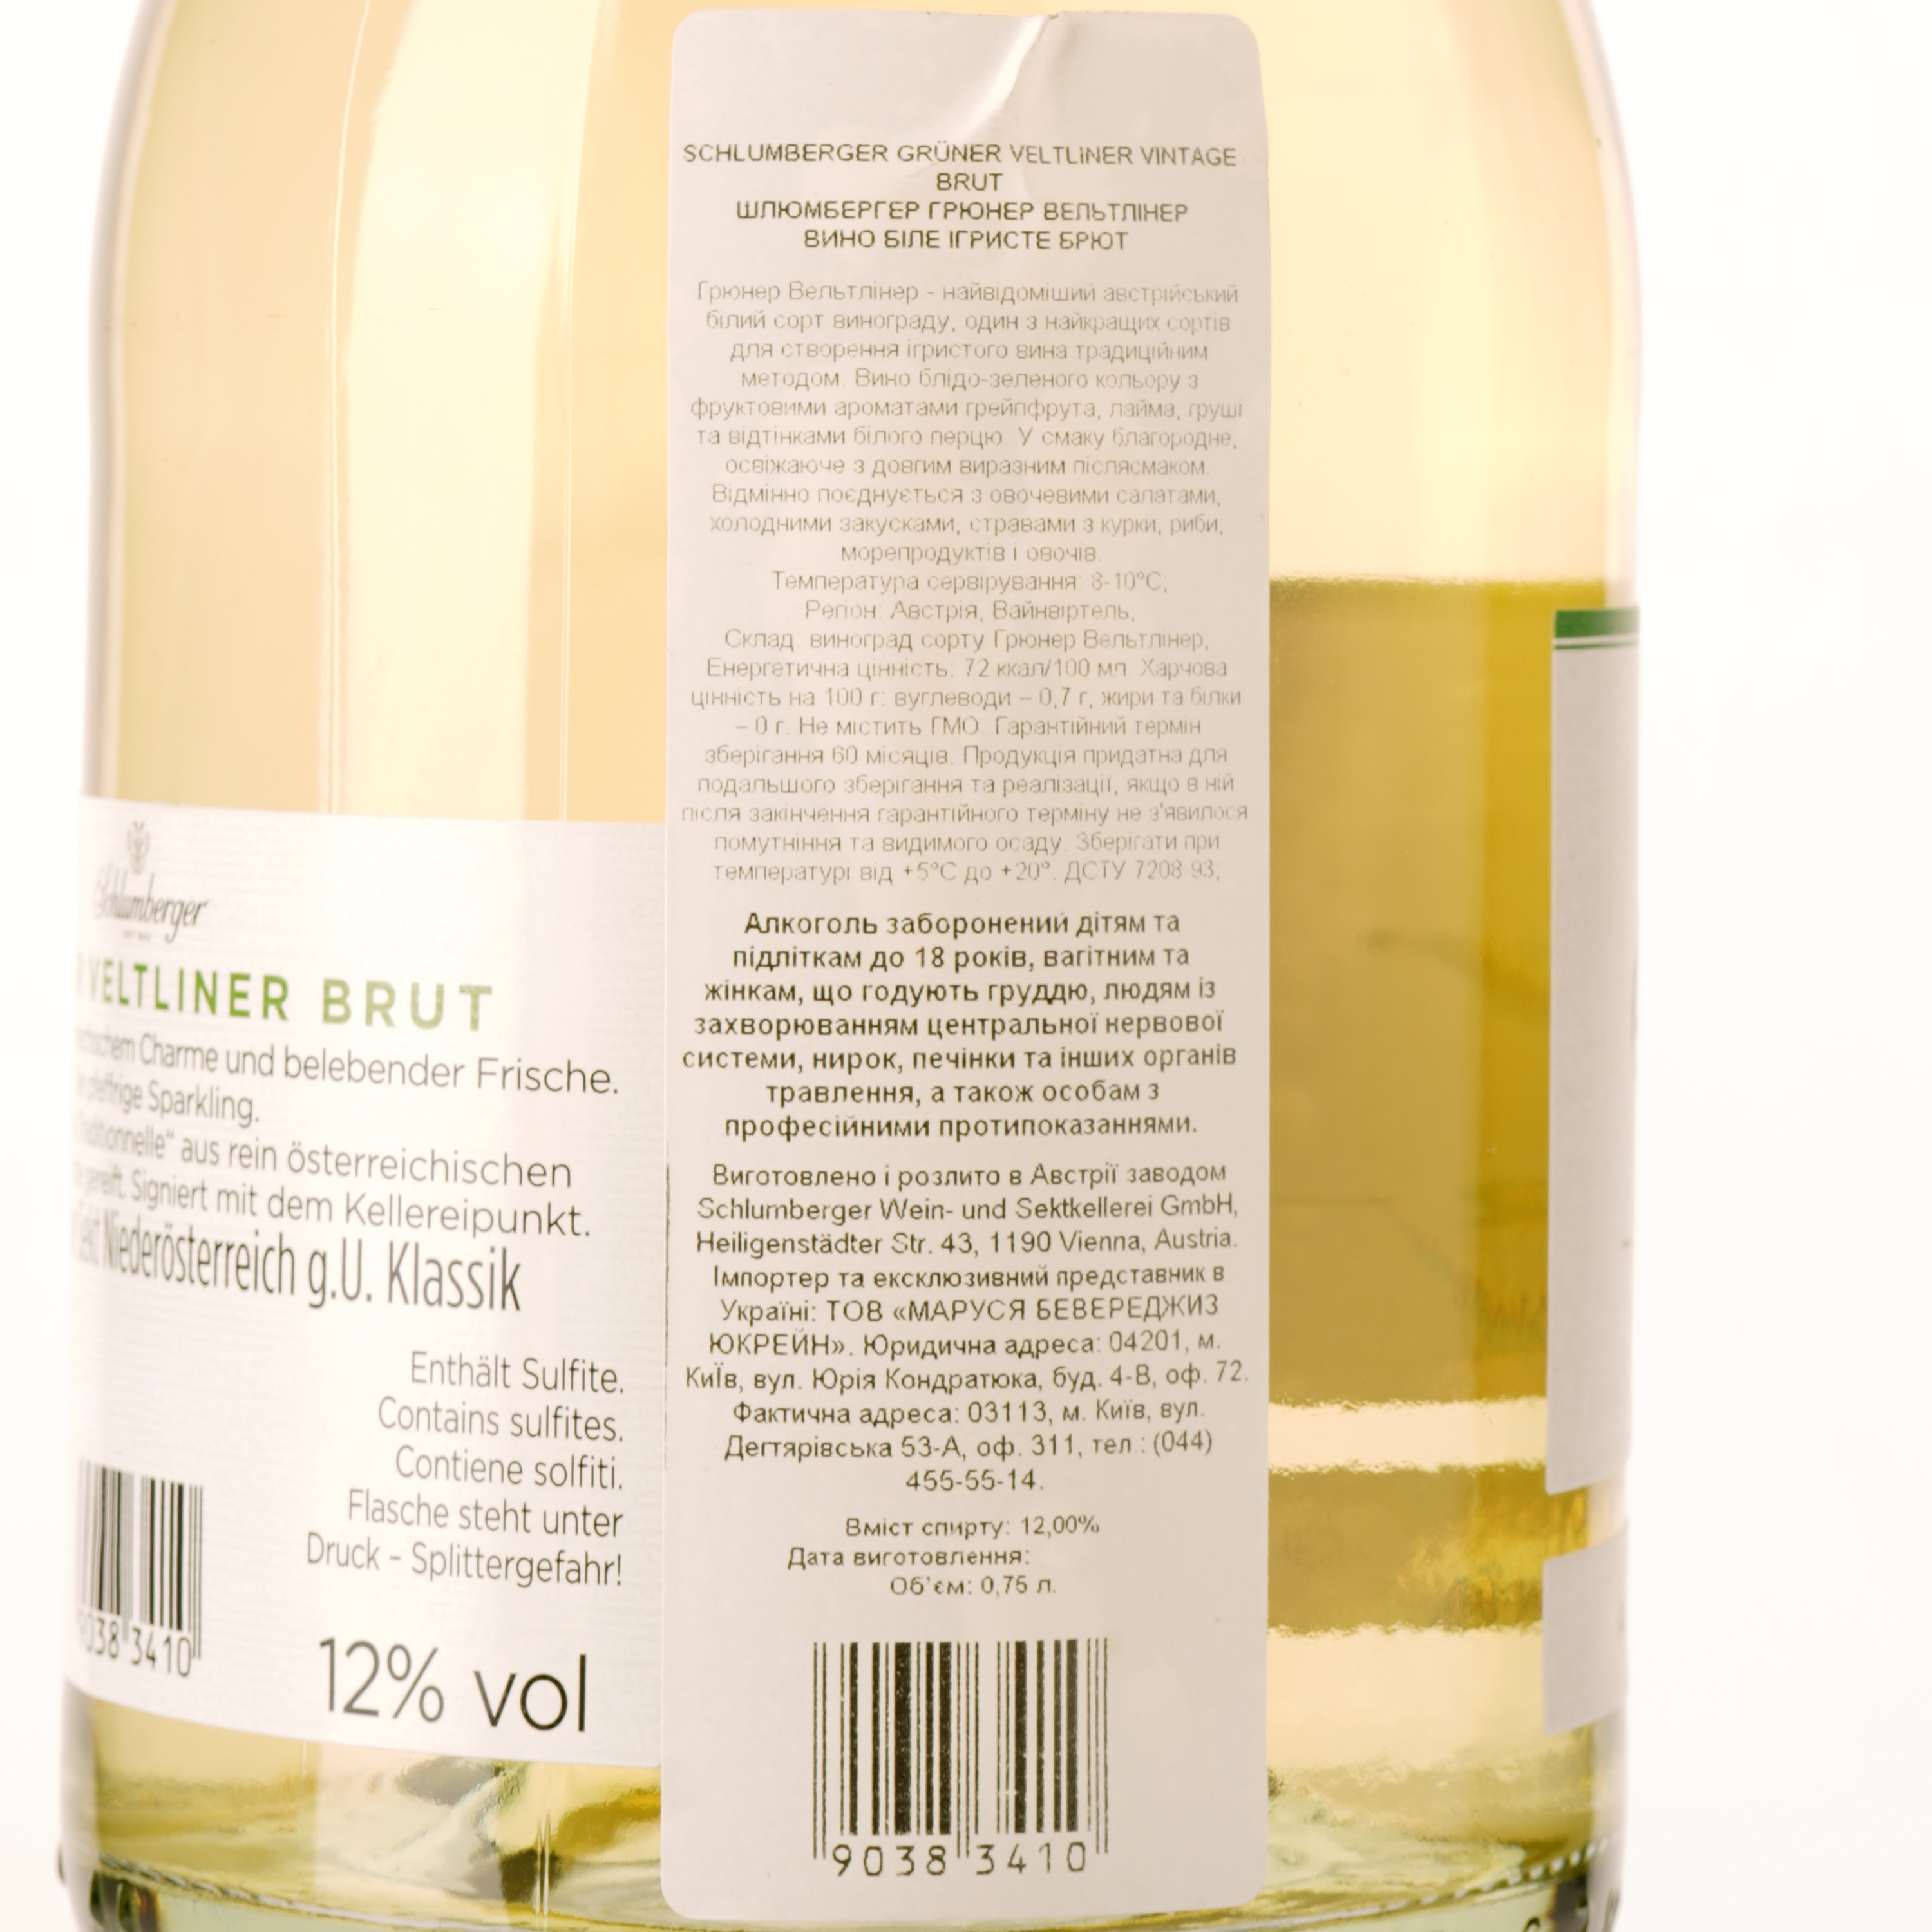 Игристое вино Schlumberger Gruner Veltliner, белое, брют, 12%, 0,75 л - фото 3